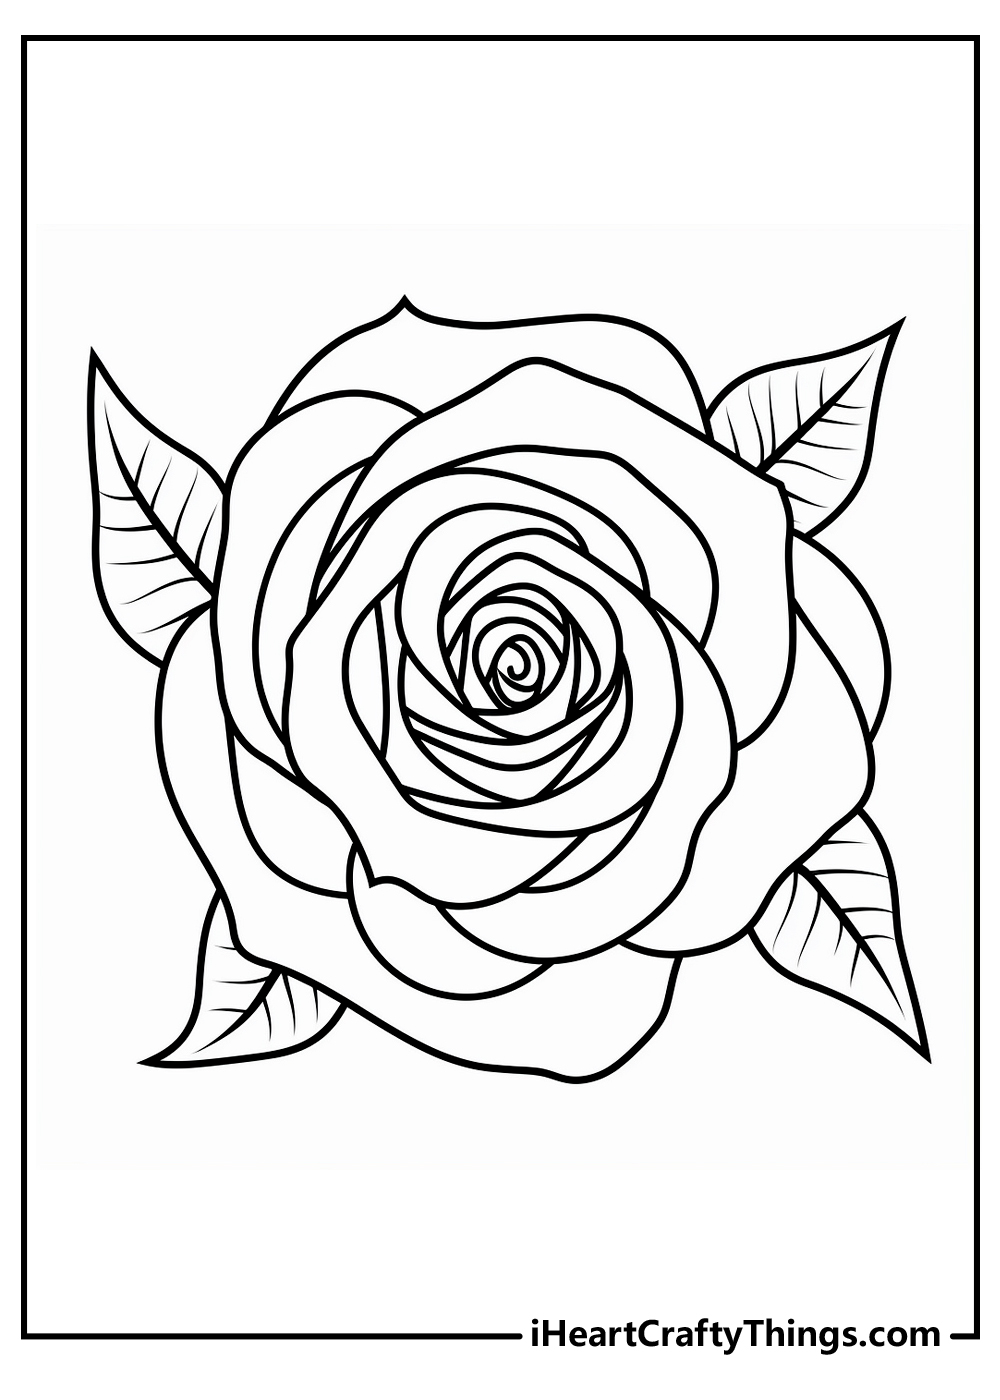 rose coloring sheet free download